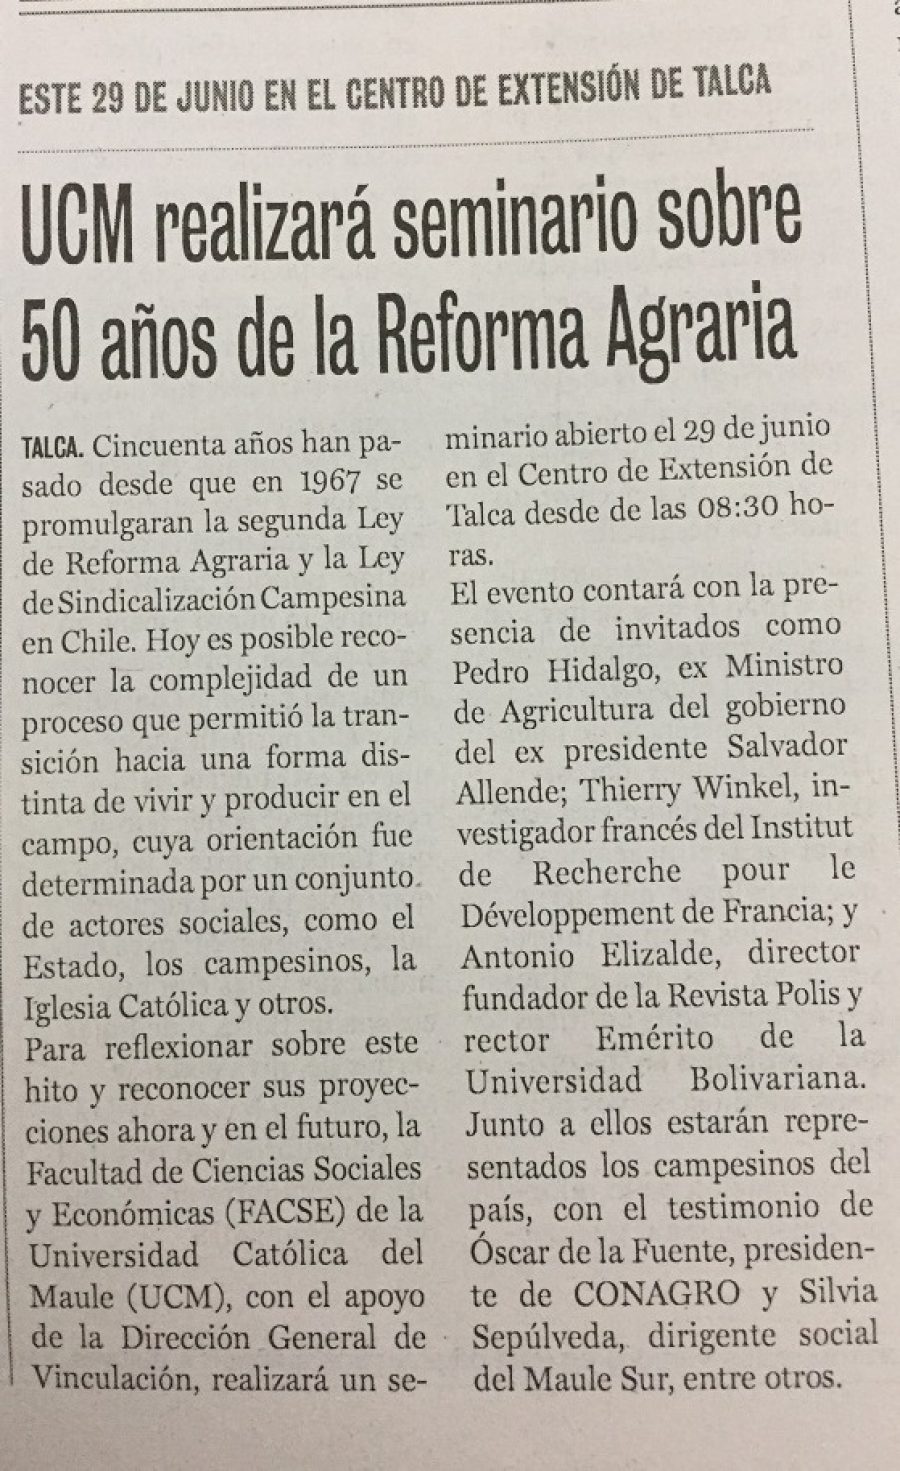 20 de junio en Diario La Prensa: “UCM realizará seminario sobre 50 años de la Reforma Agraria”